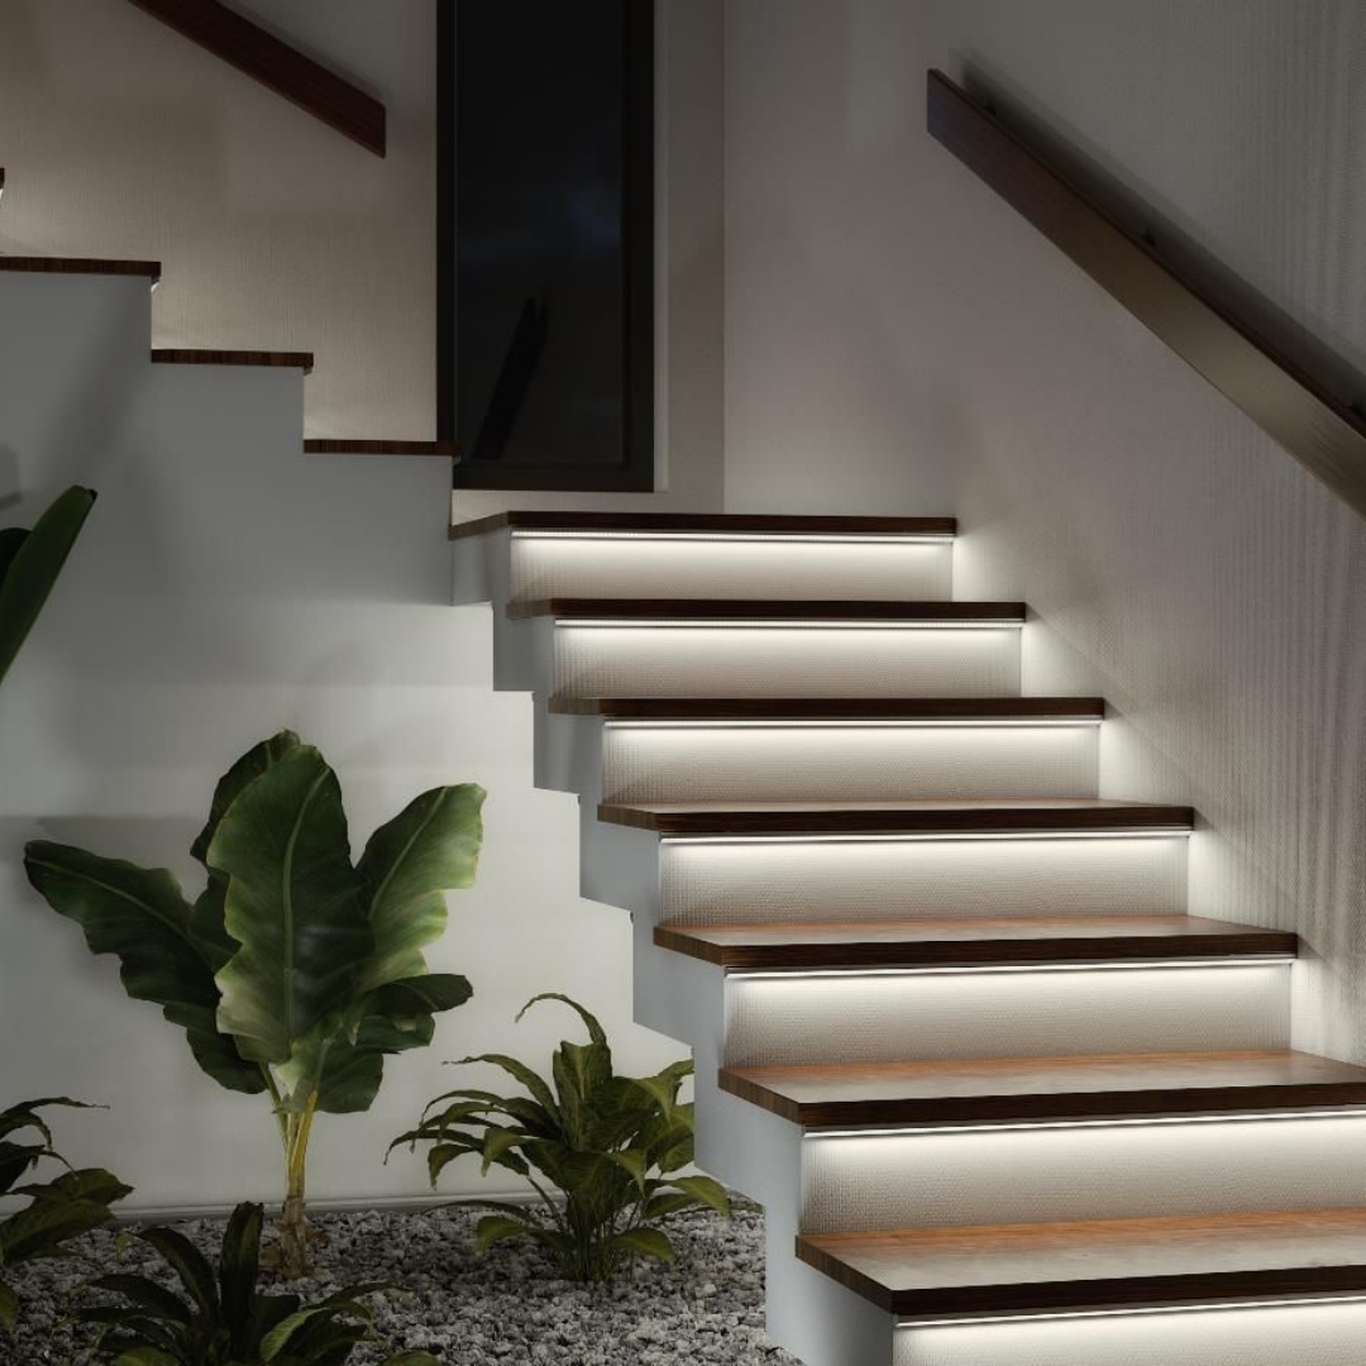 Loo enda kodus õdus (ja ka turvaline!)  õhkkond lisades treppidele valgustus. Valikus mitmeid lahendusi, mida saame oma klientide vajadusi ar